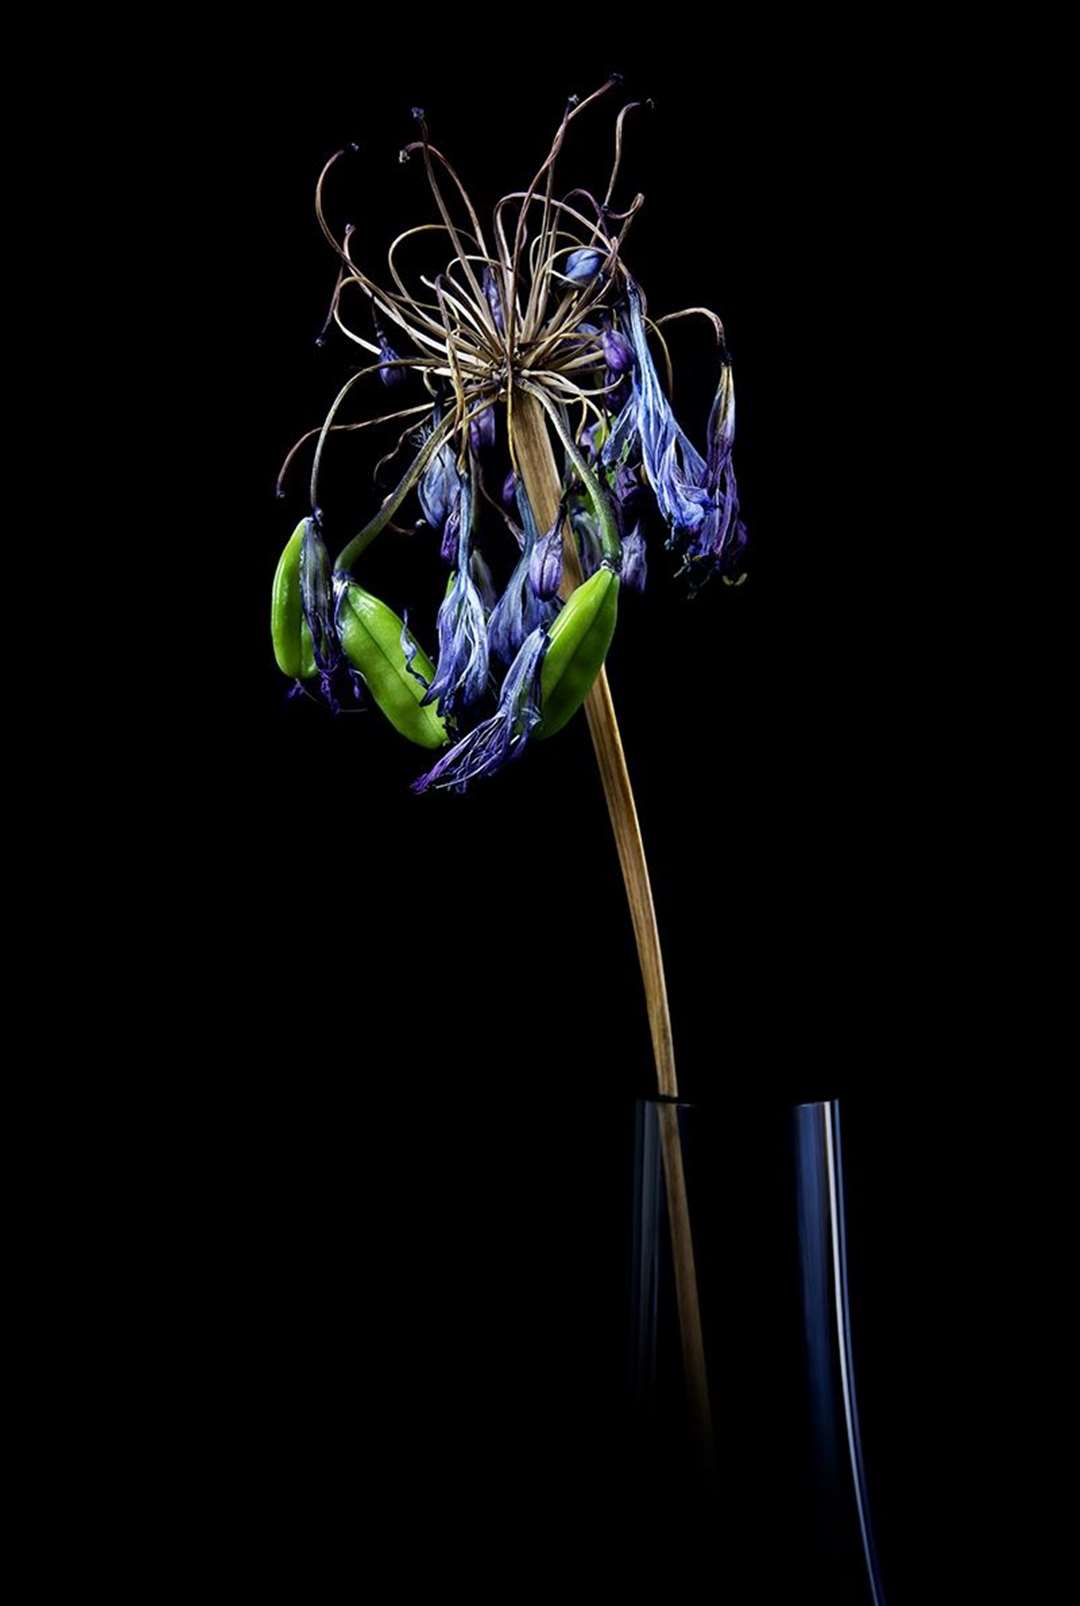 Study of an Allium by Martin Ross.